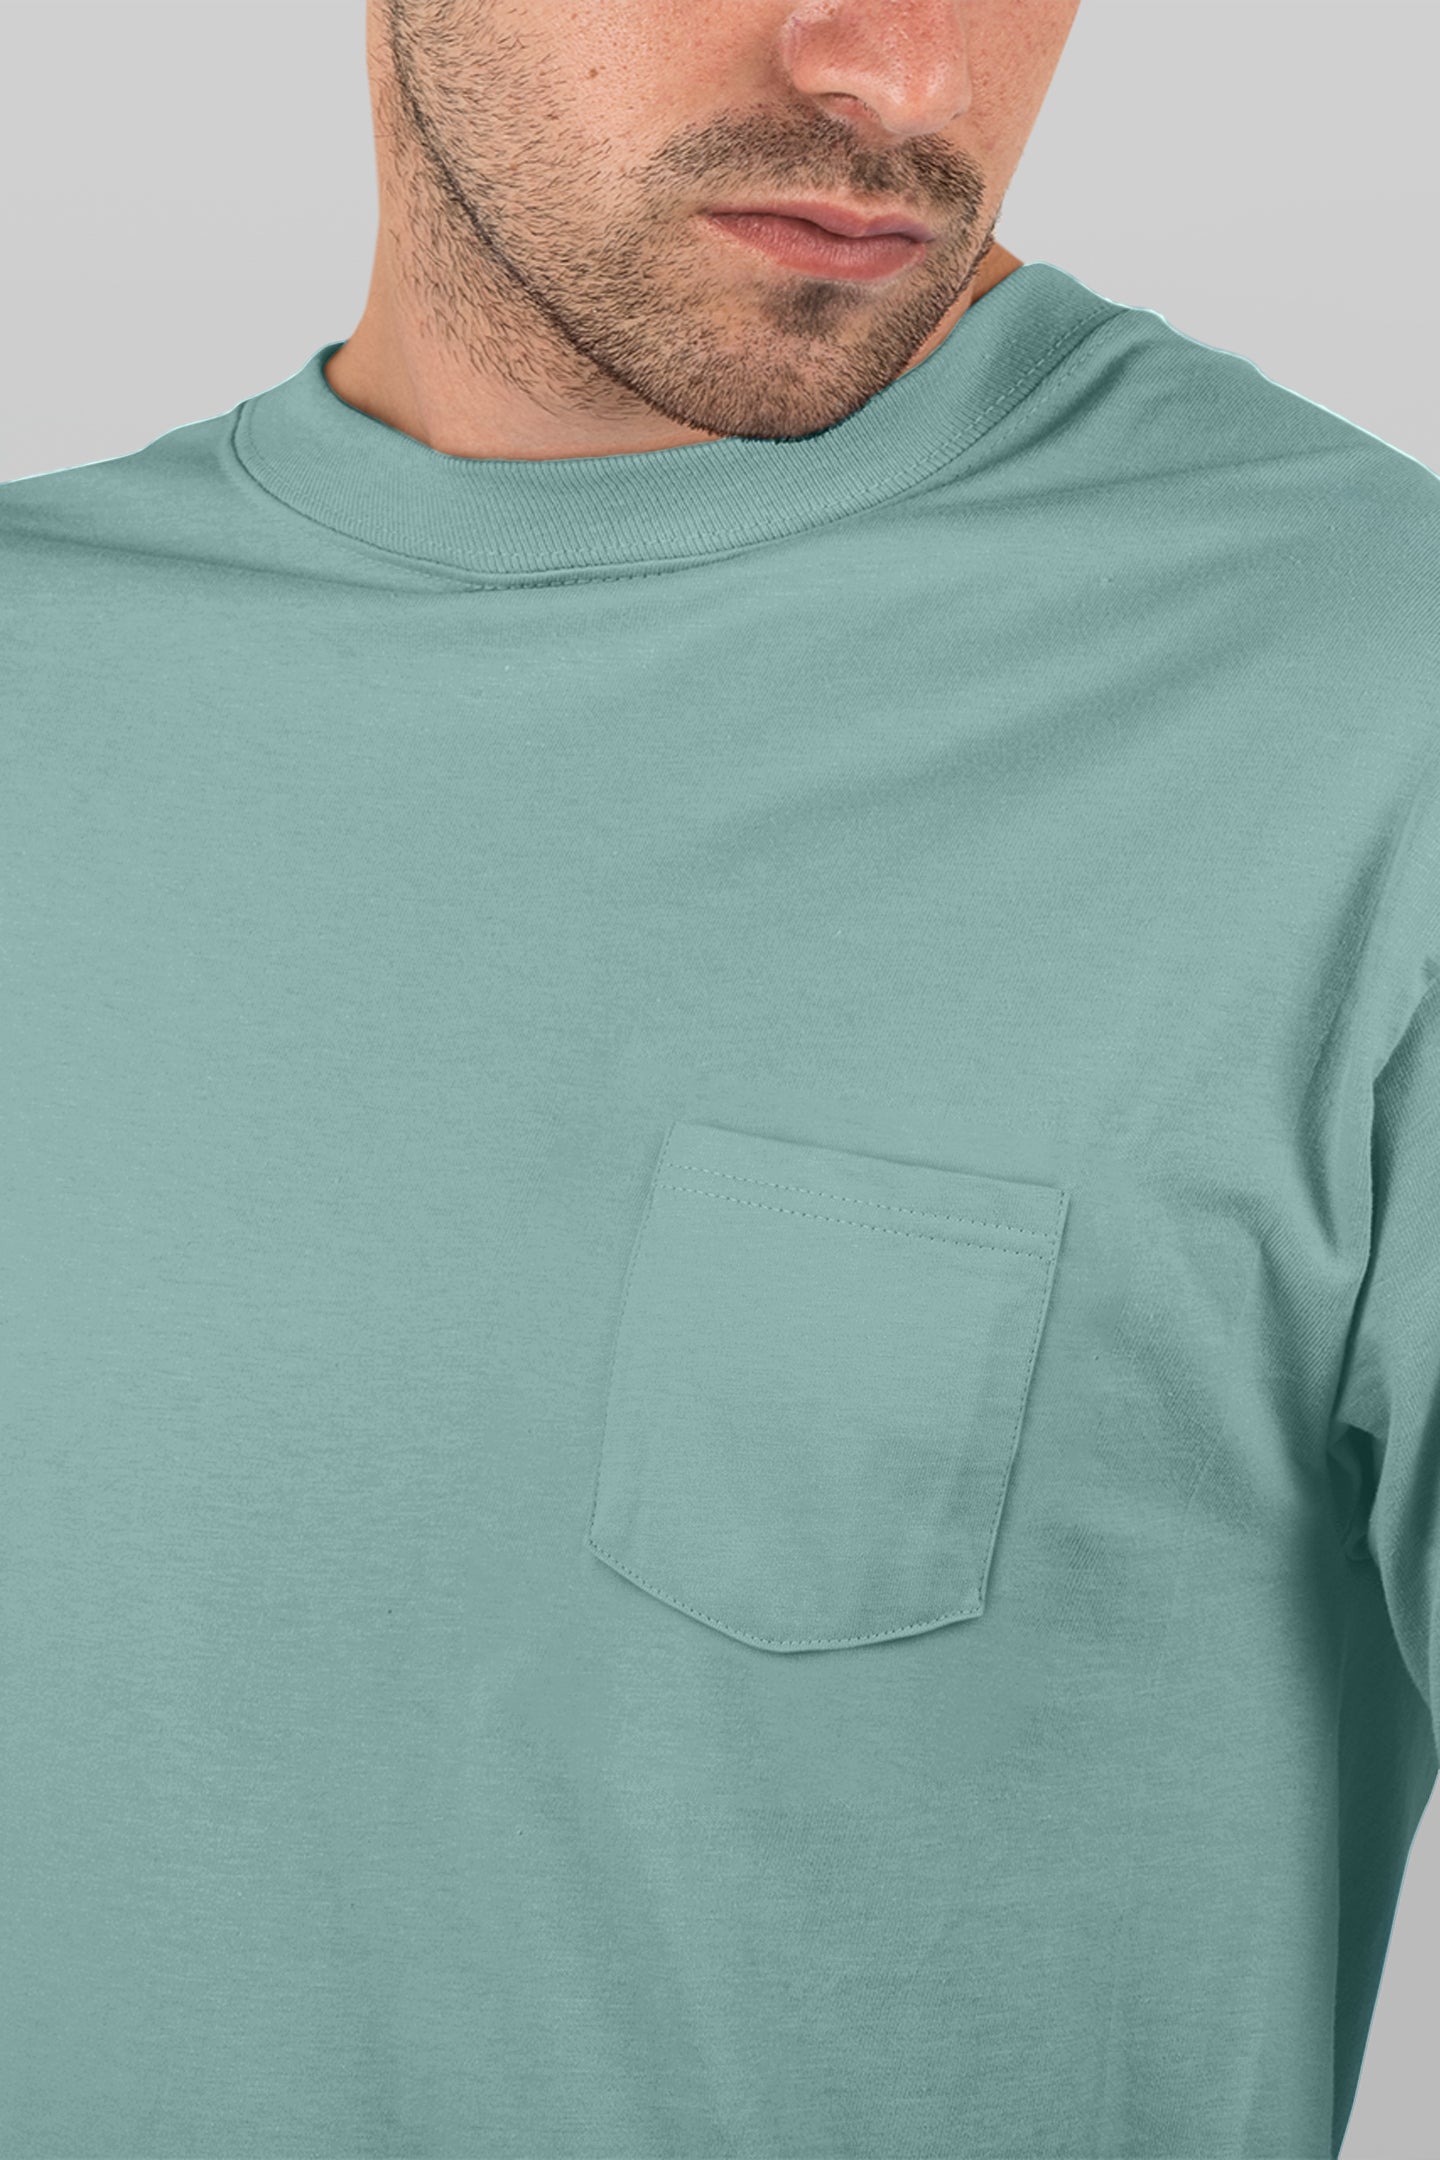 Baliza Men's 100% Cotton Round Neck T-shirt- Sage Green